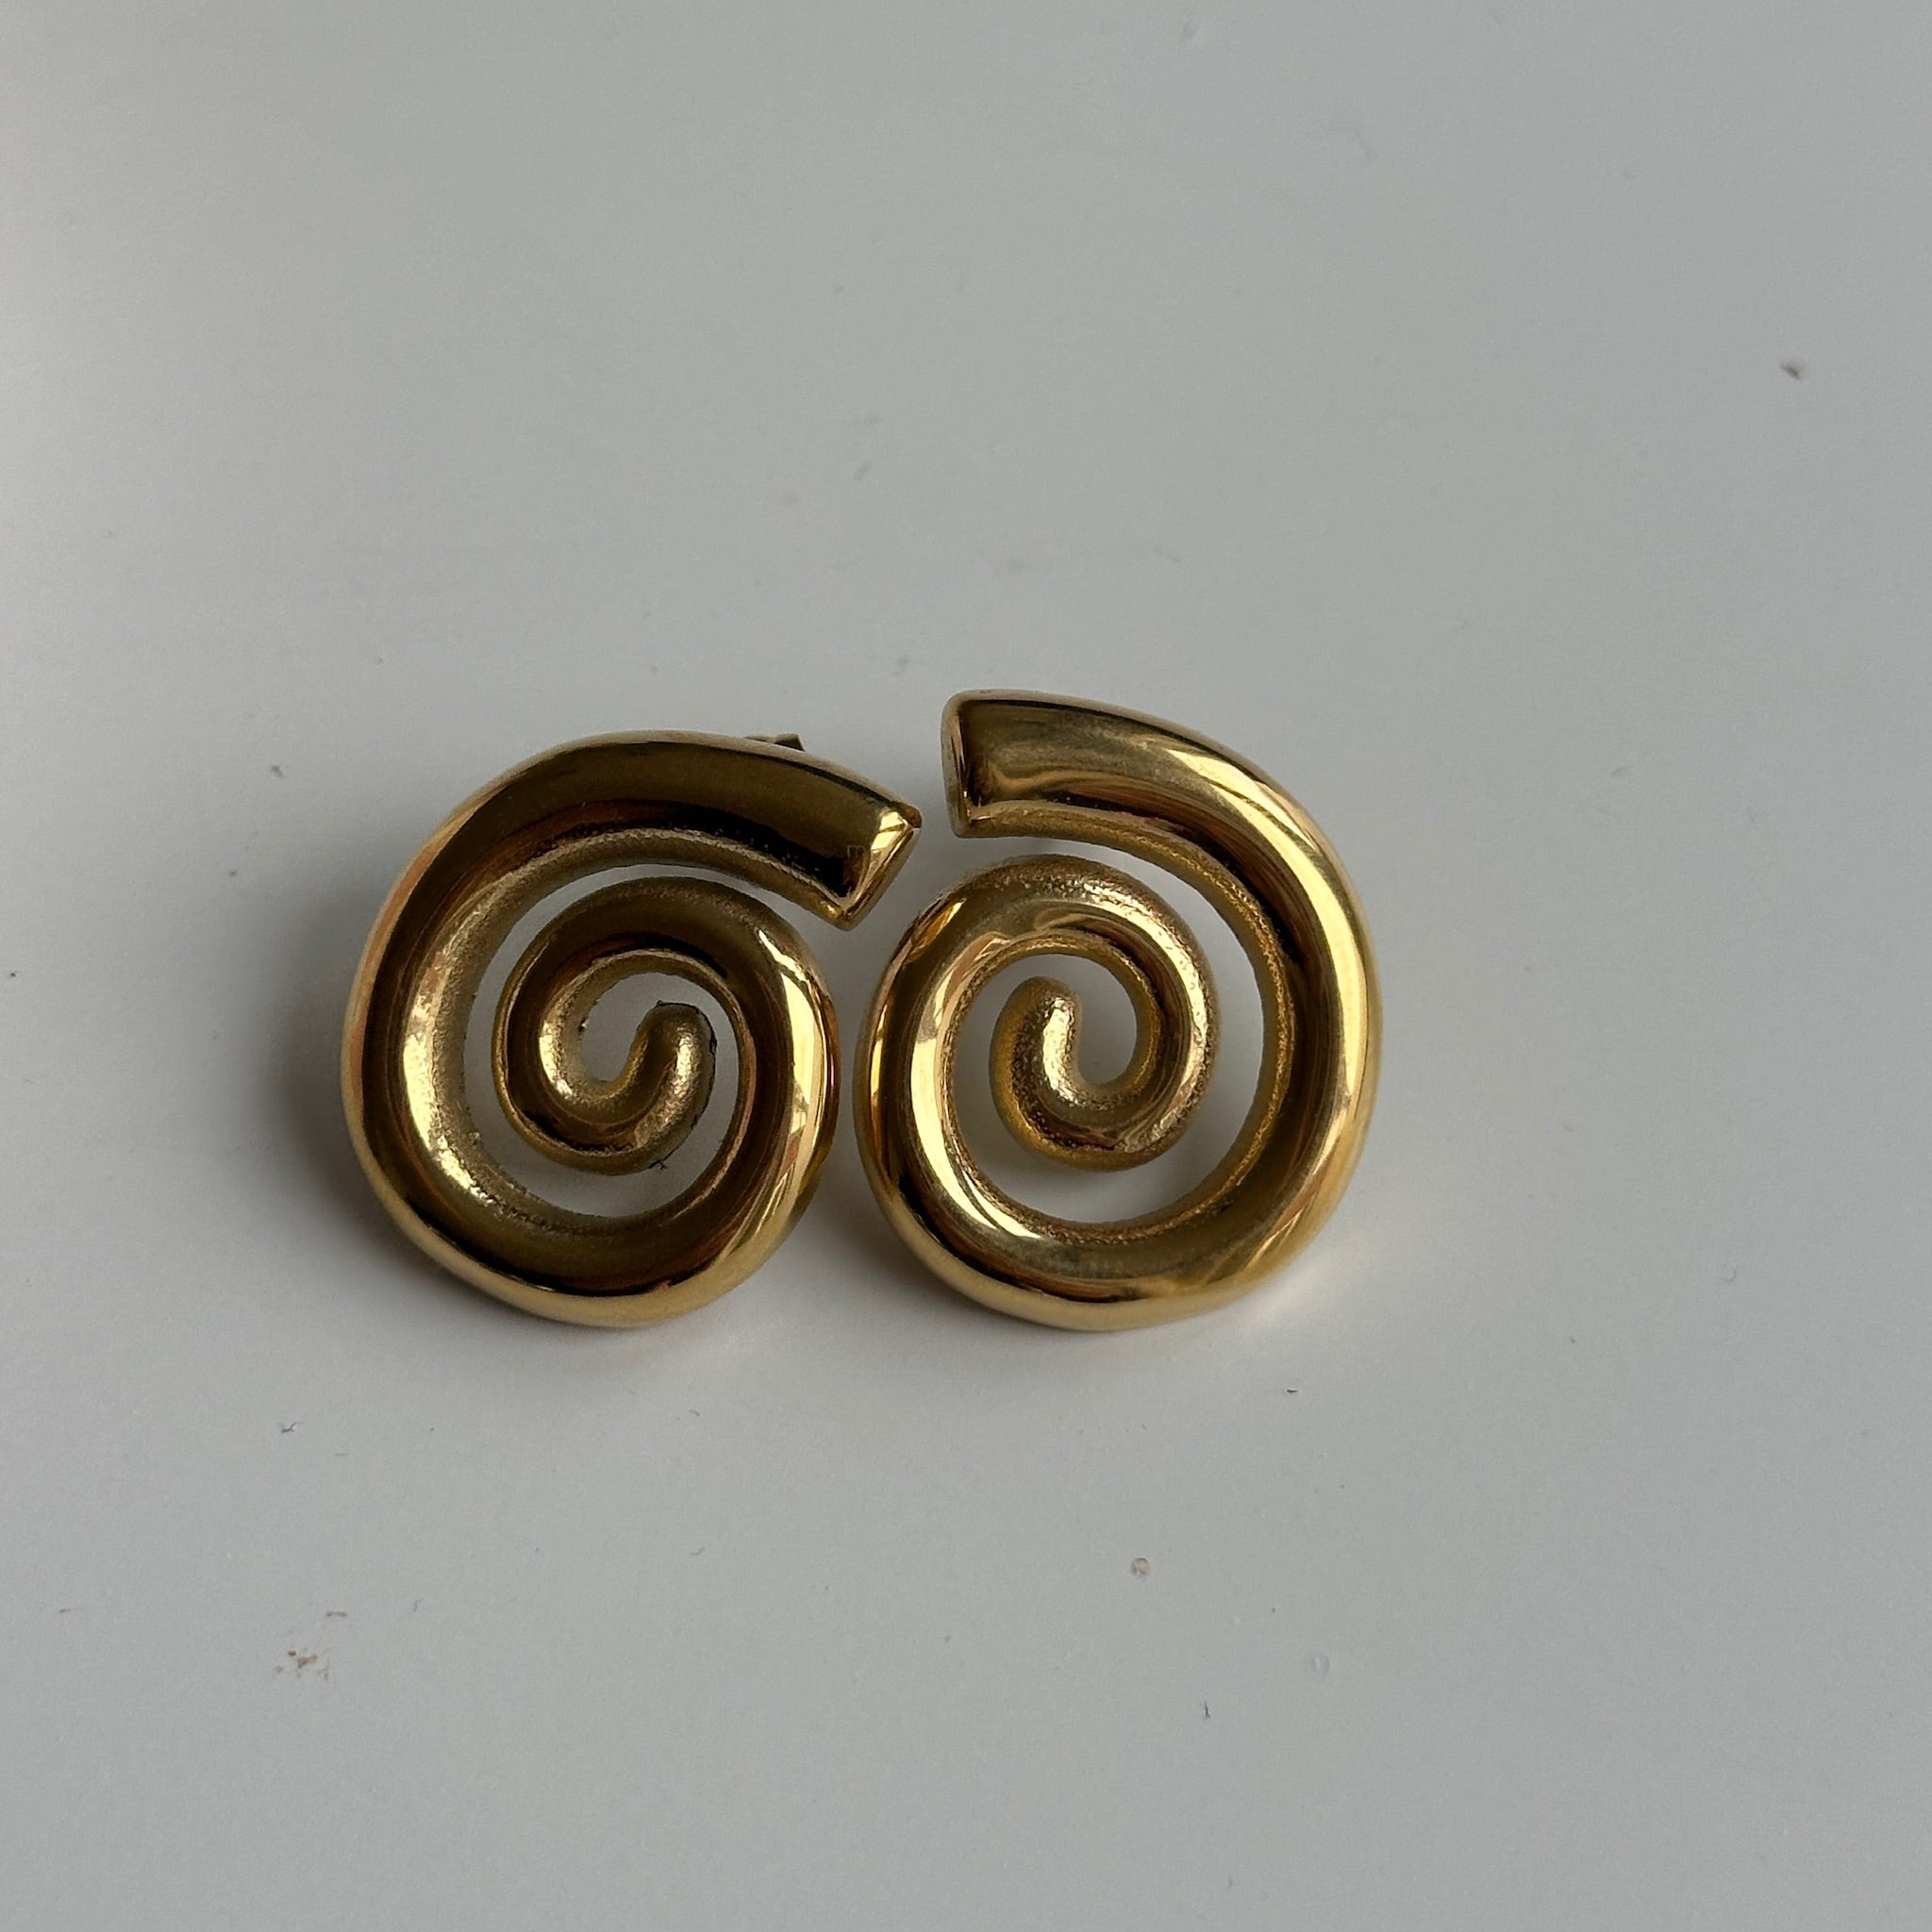 swirl earrings